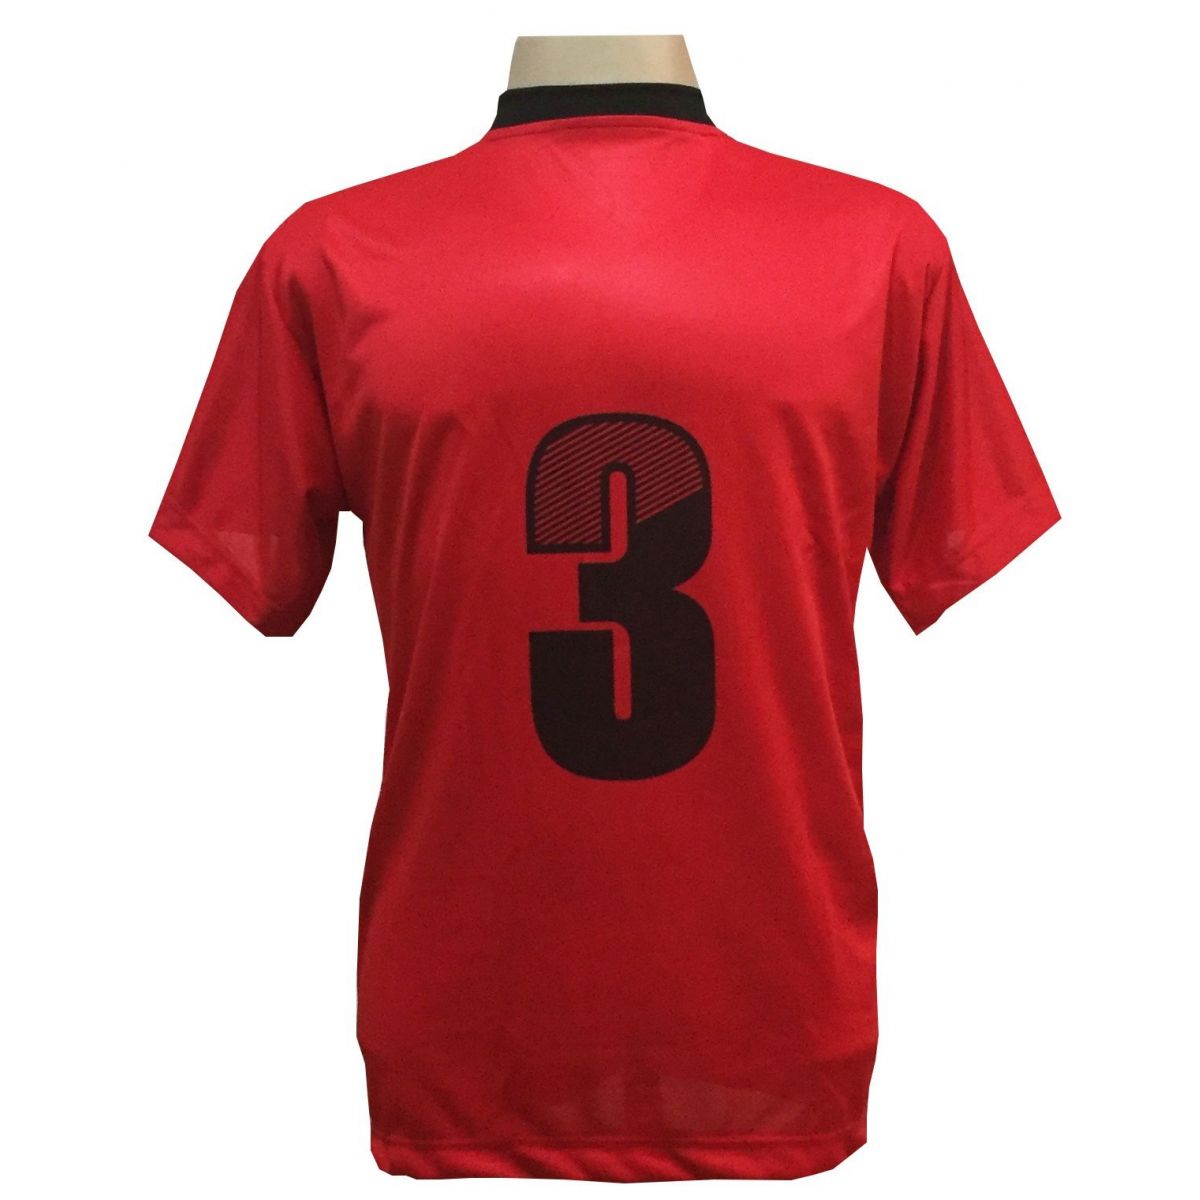 Uniforme Esportivo com 18 camisas modelo Roma Vermelho/Preto + 18 calções modelo Madrid + 1 Goleiro + Brindes